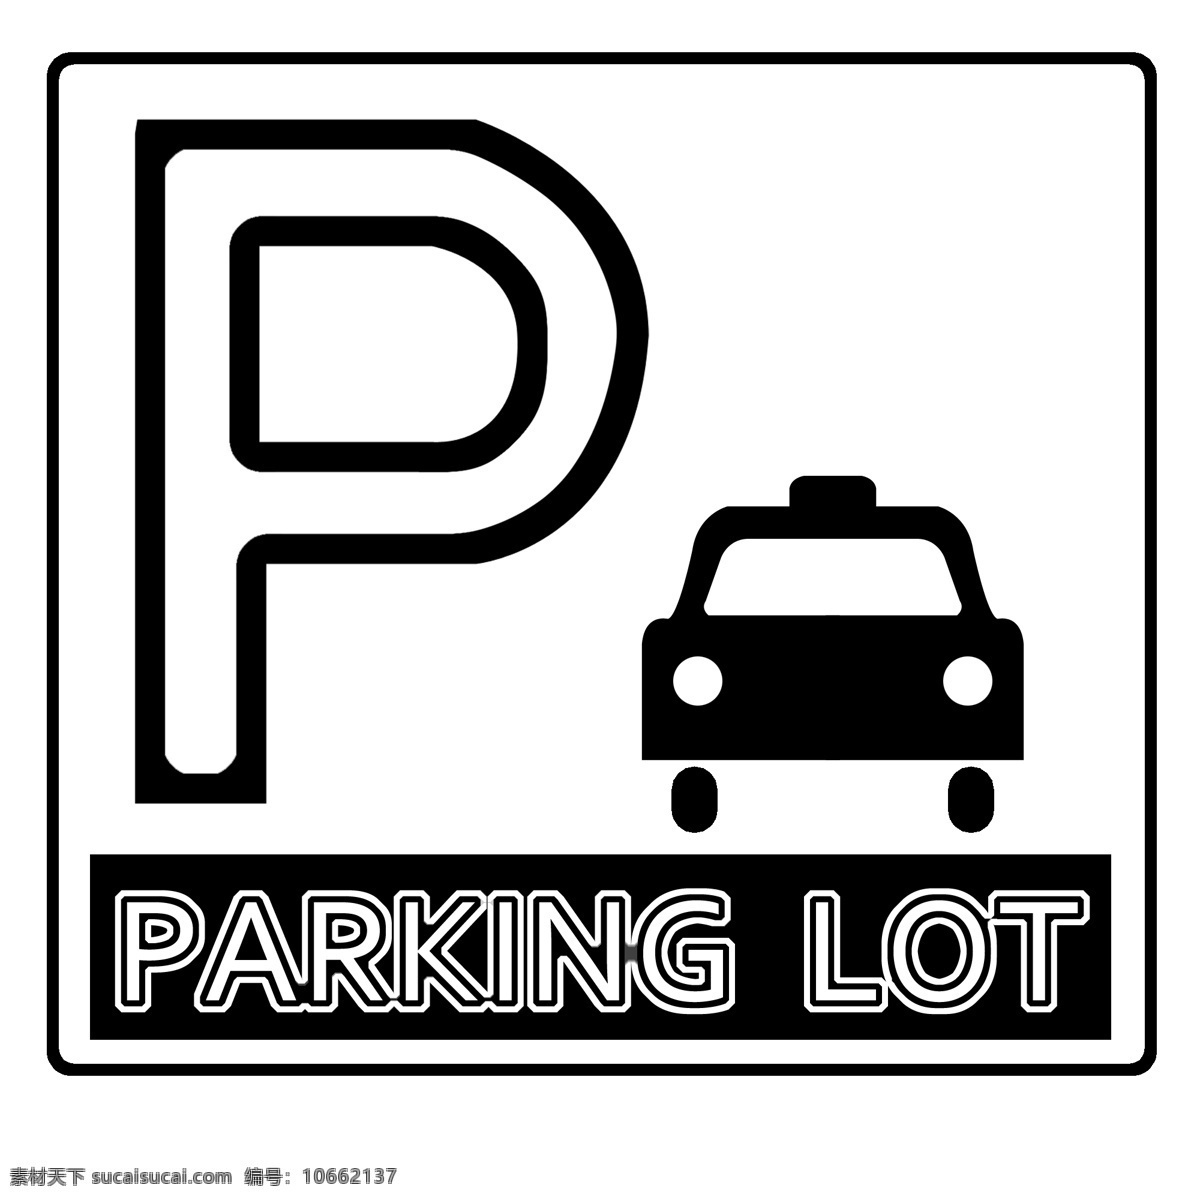 机动车 停放 处 标志 停放处 方形图标 公共设施 停车告示 停车牌 停泊处 黑色图标